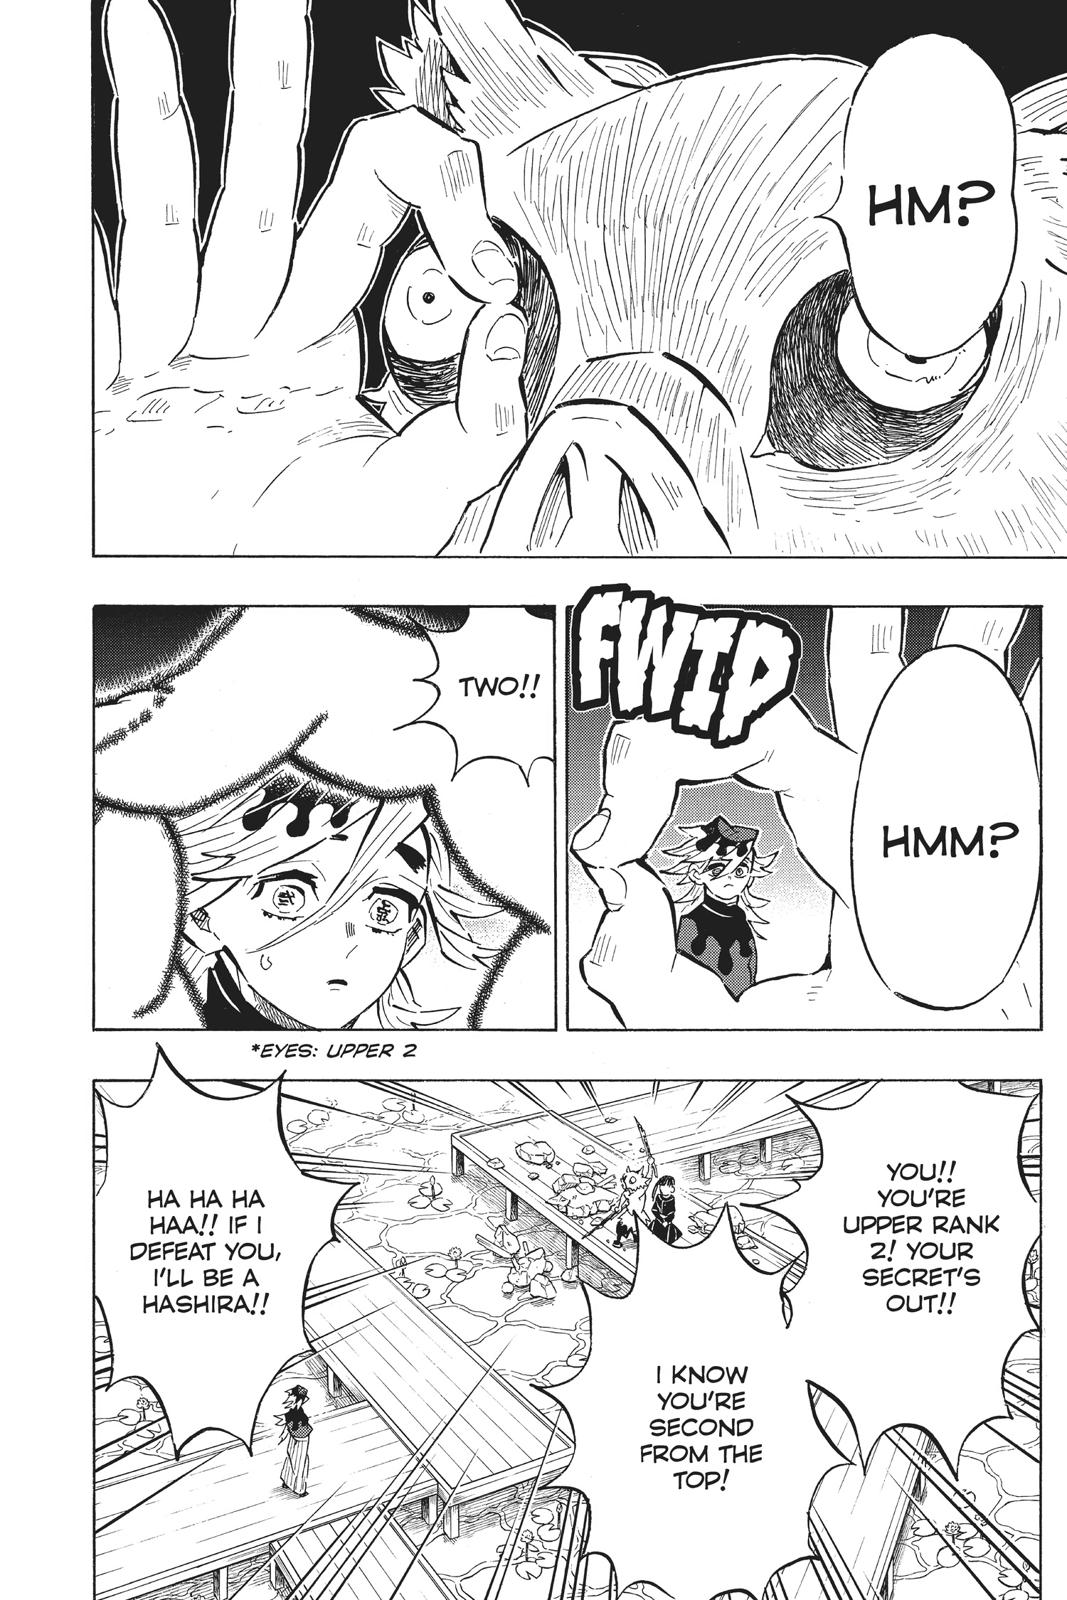 Demon Slayer Manga Manga Chapter - 159 - image 2